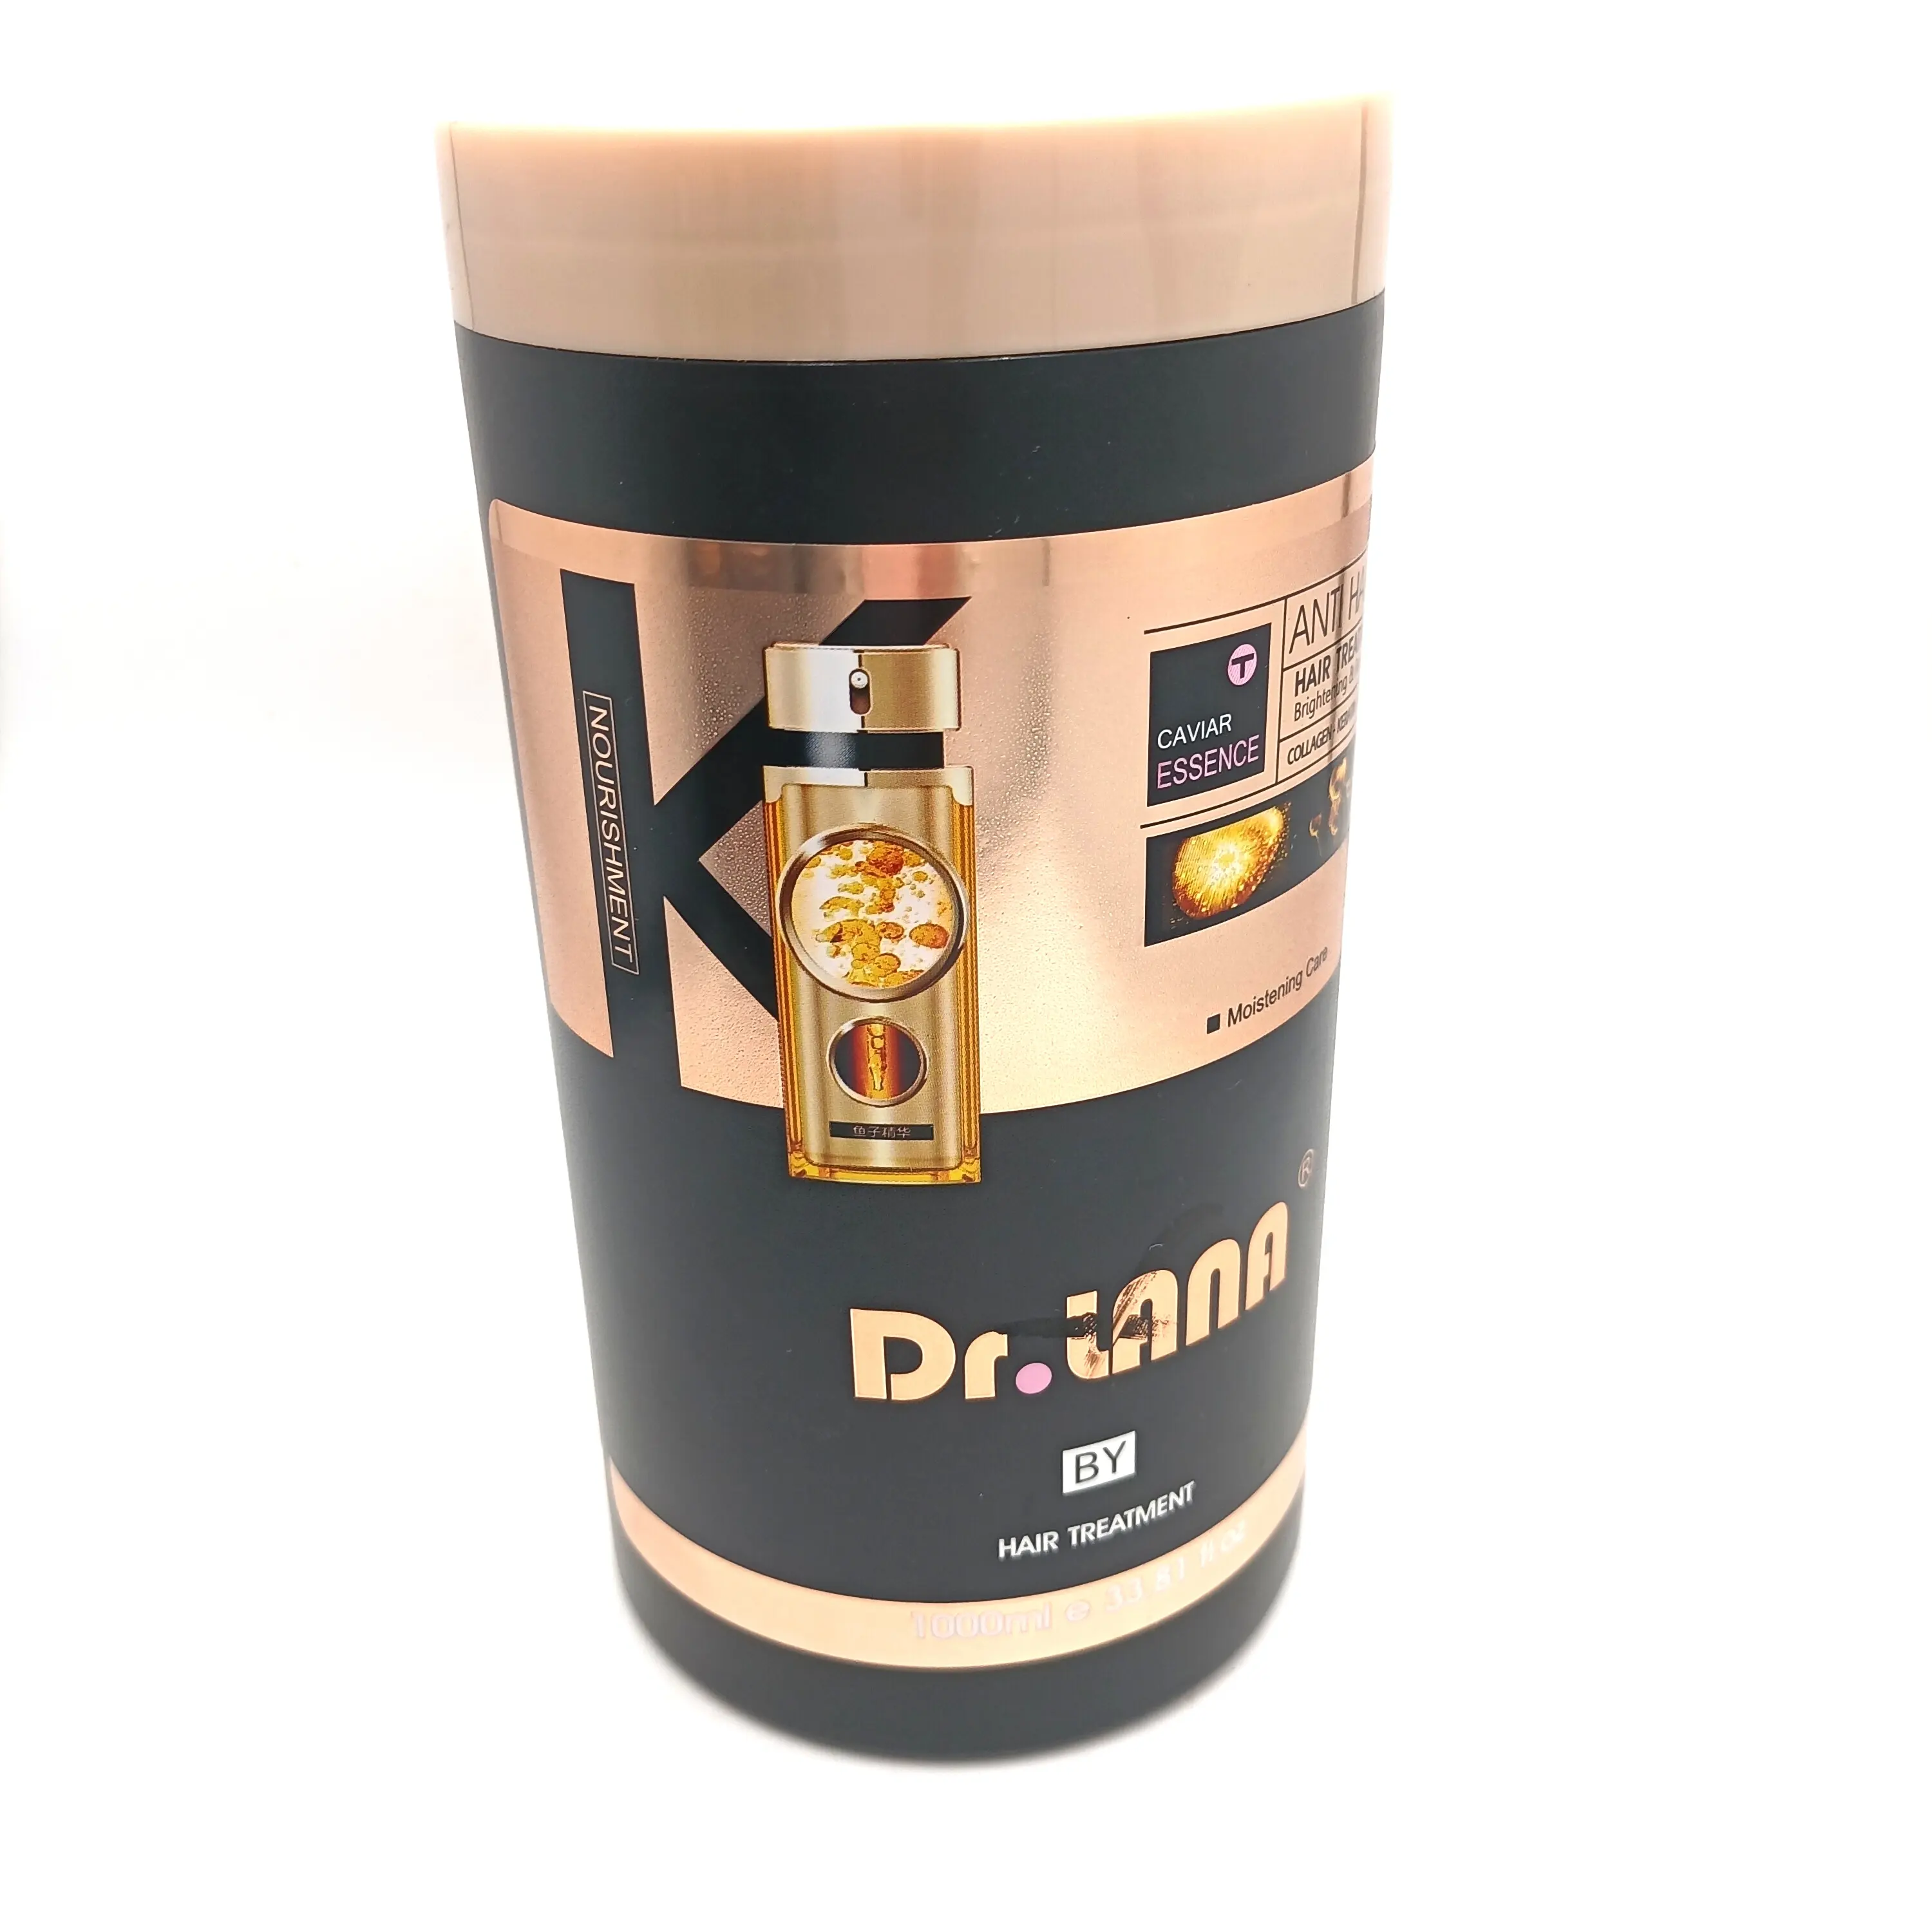 DR. LANA nuovo 5in 1 caviale marocco olio di ARGAN e proteine balsamo per capelli oro ANTI-caduta dei capelli e riparazione profonda